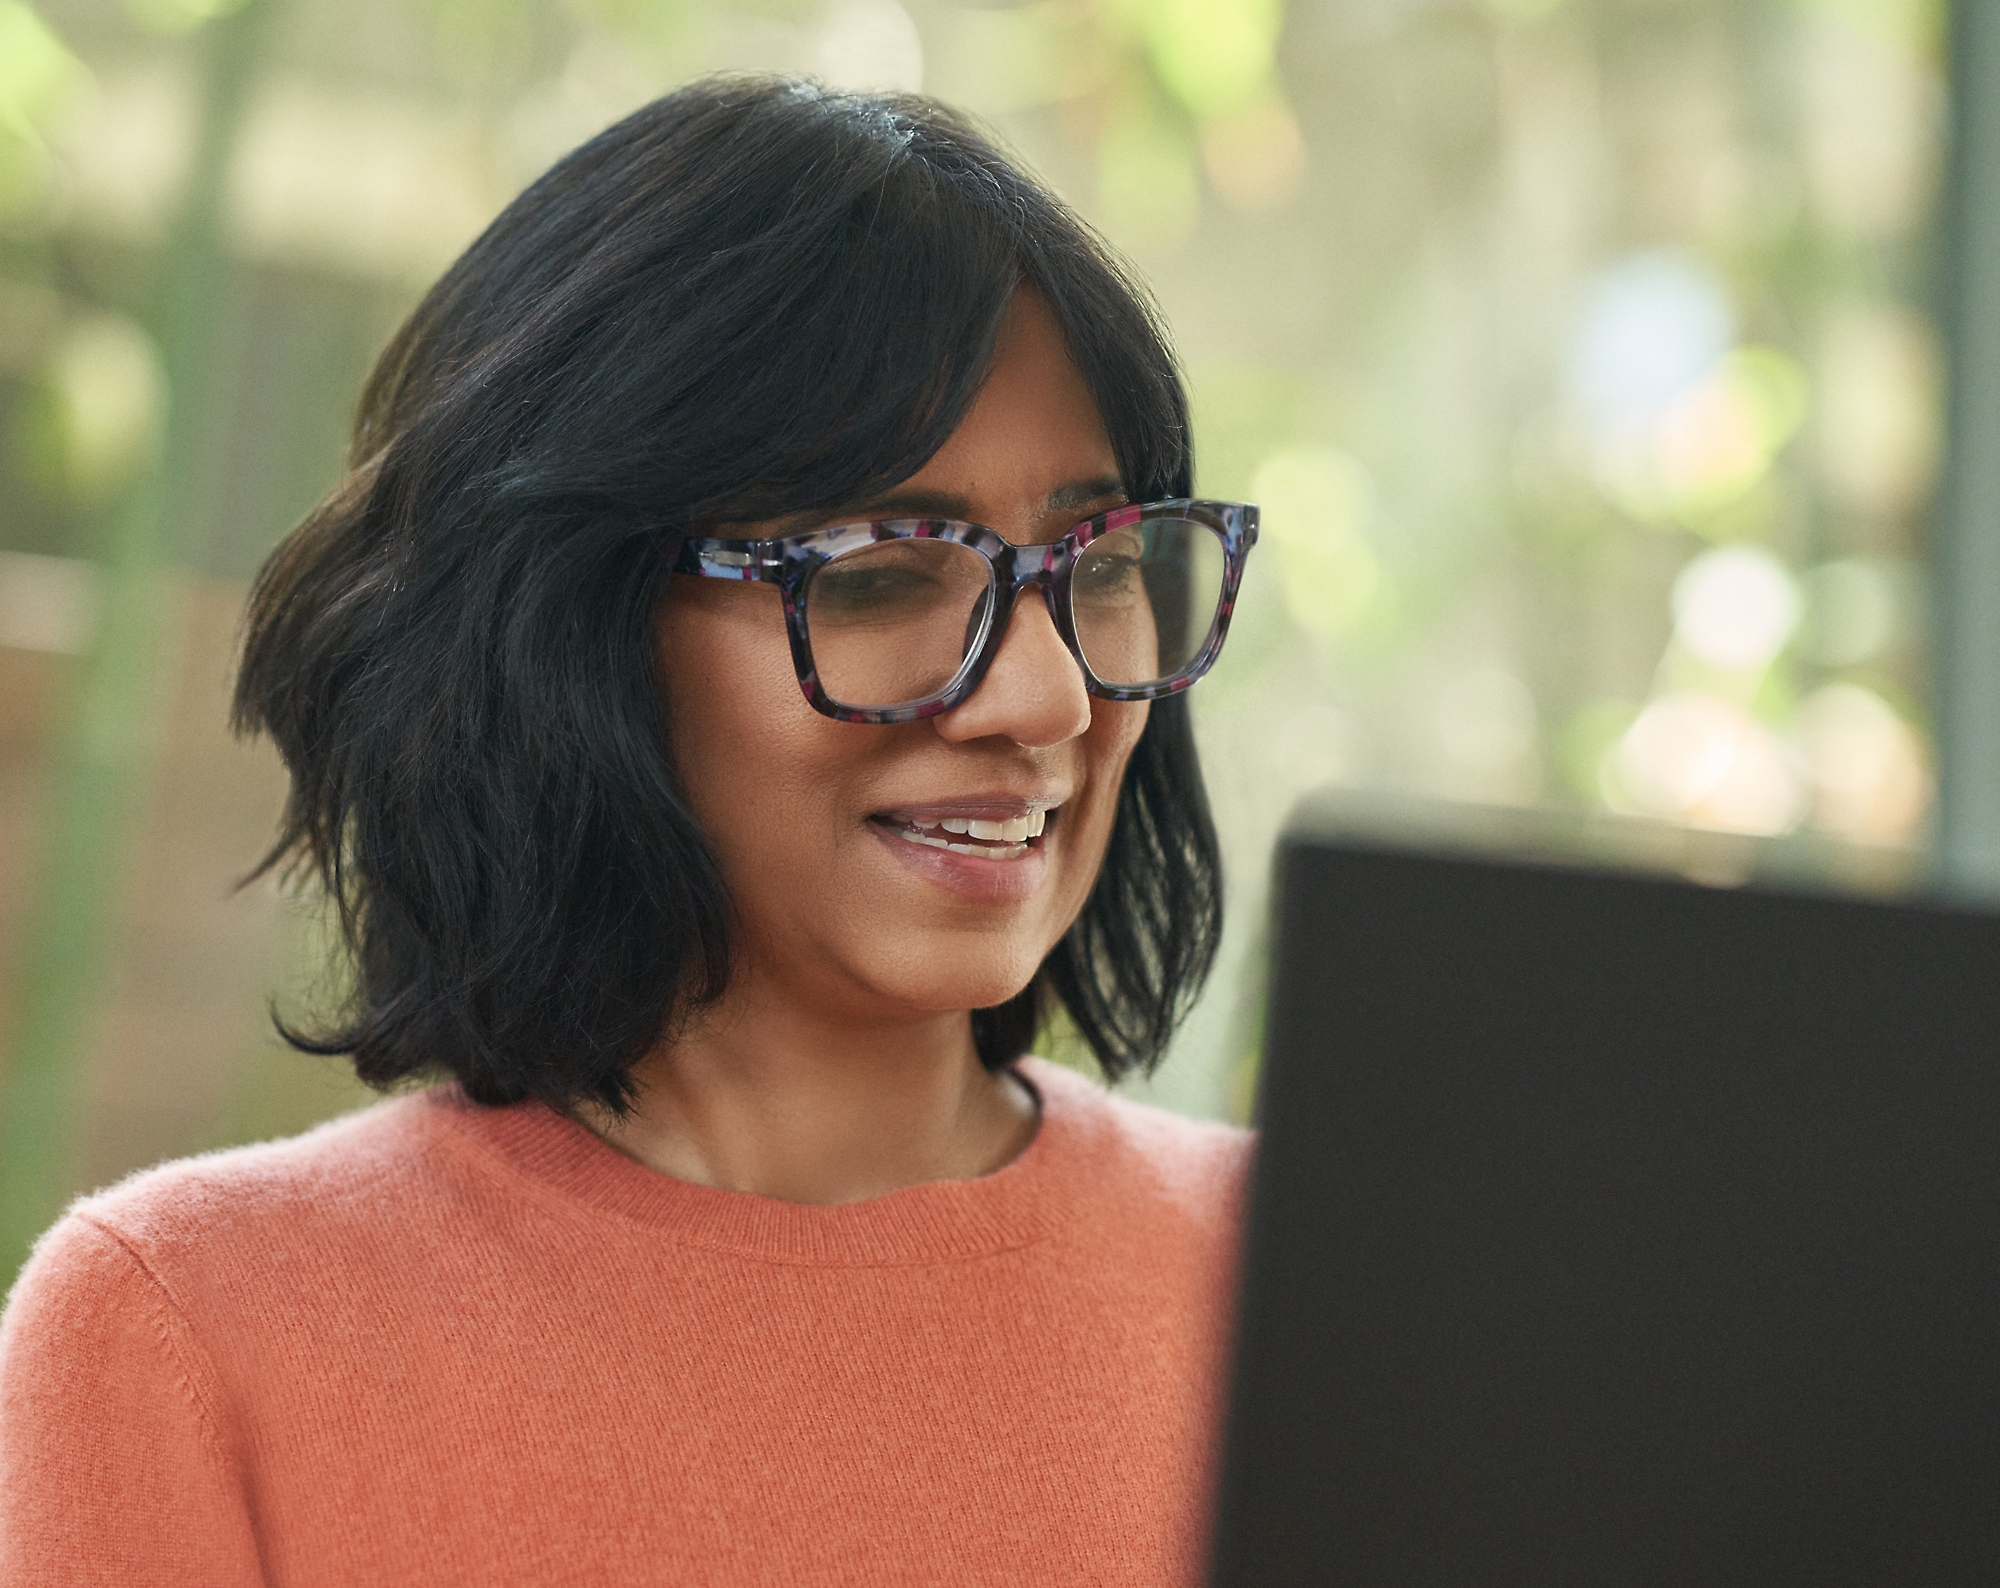 En kvinde med briller, der smiler og arbejder på sin bærbare computer